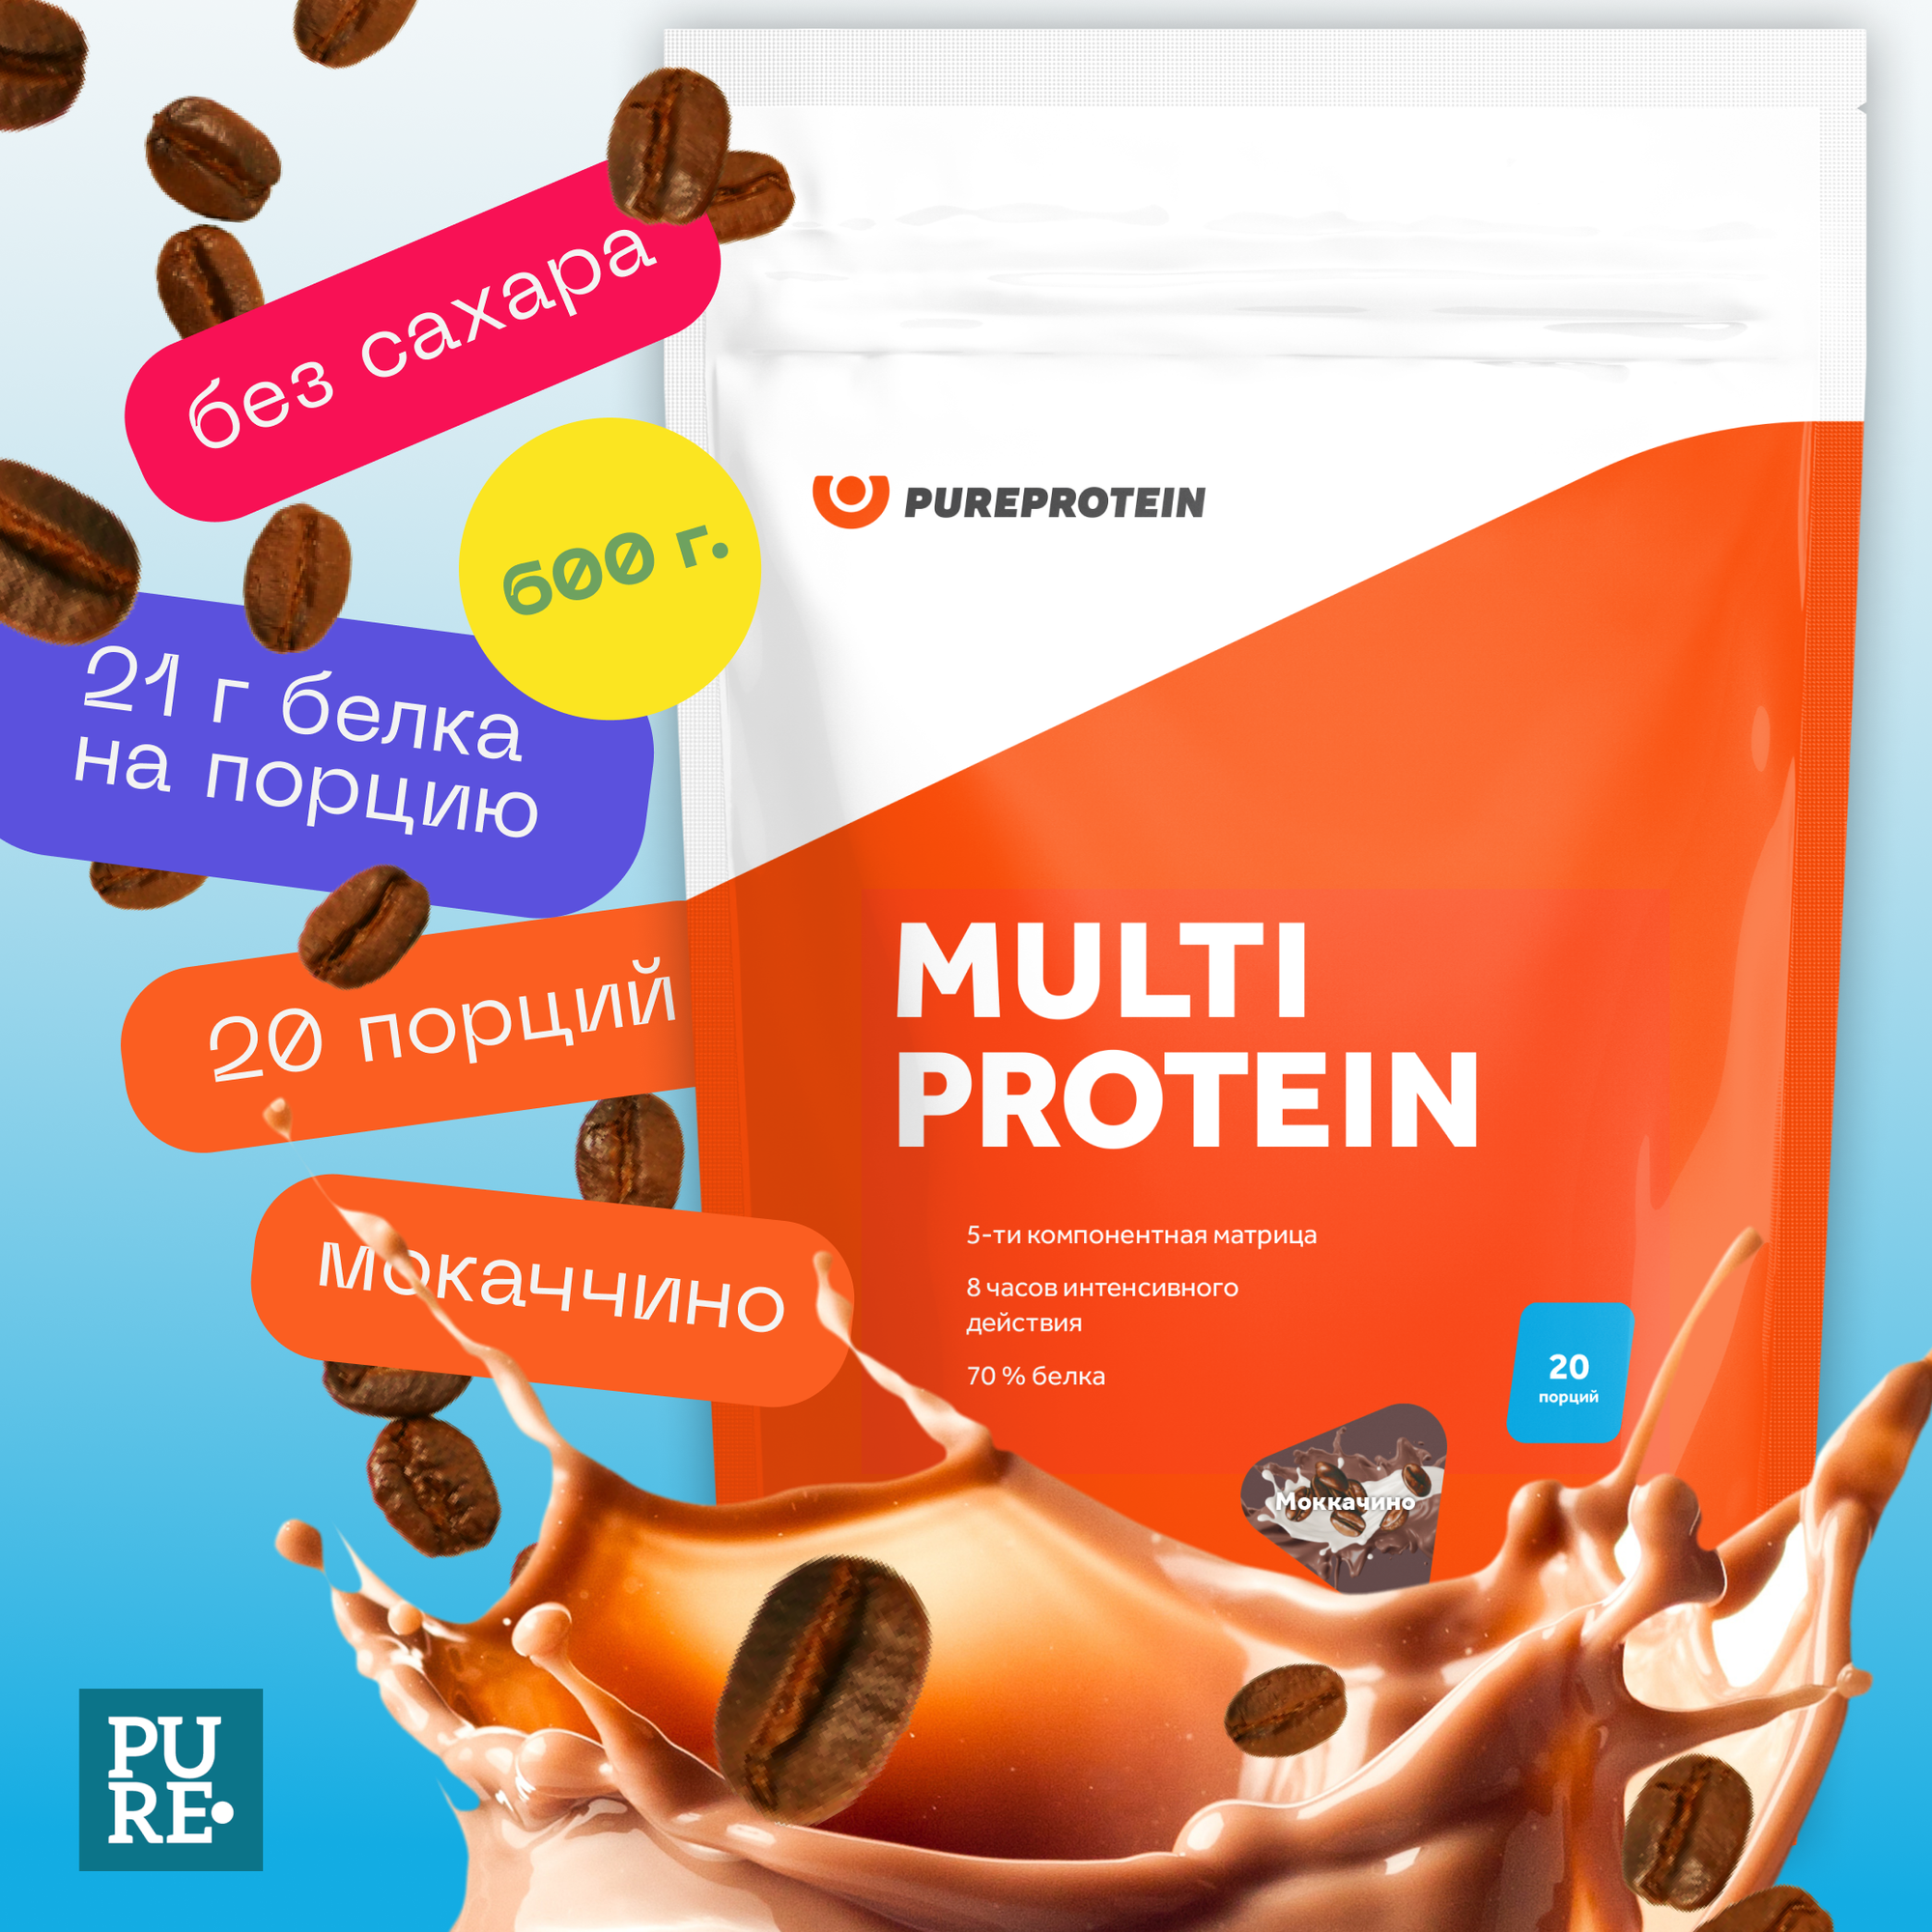 Протеин Мультикомпонентный Pureprotein 600 гр./Мокаччино